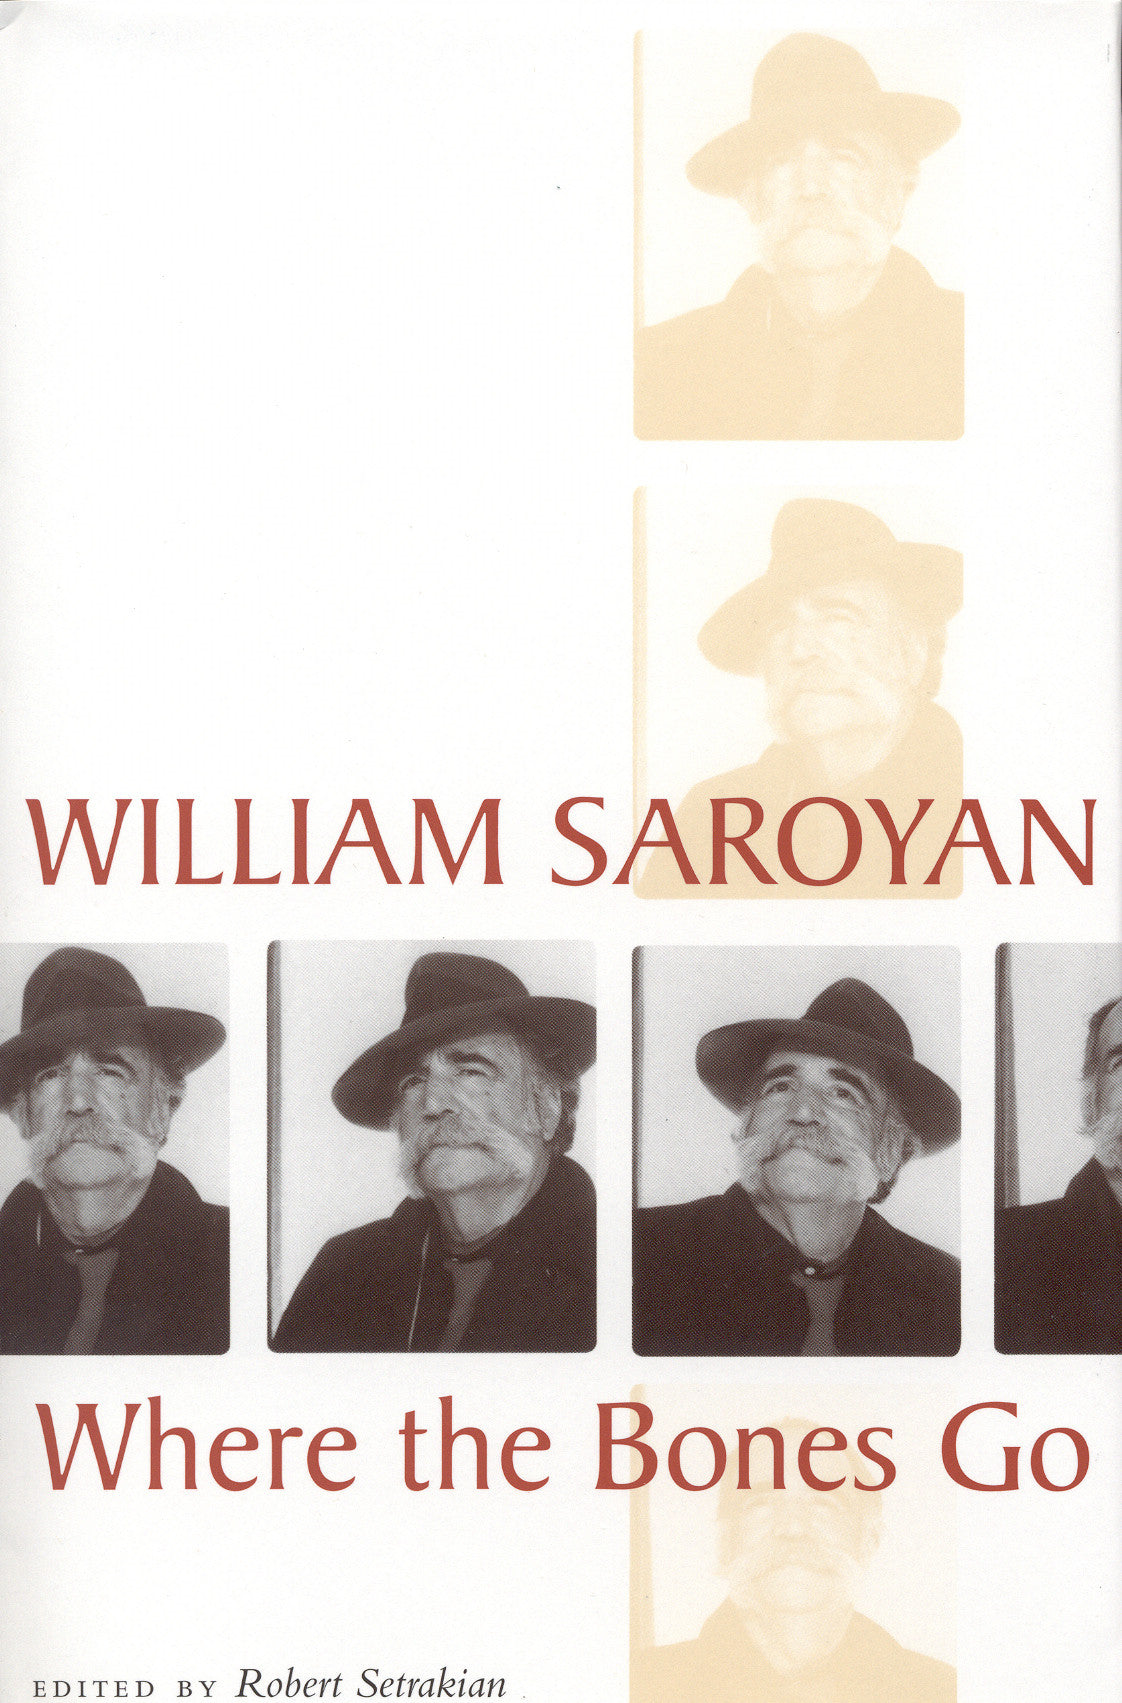 WHERE THE BONES GO: WILLIAM SAROYAN